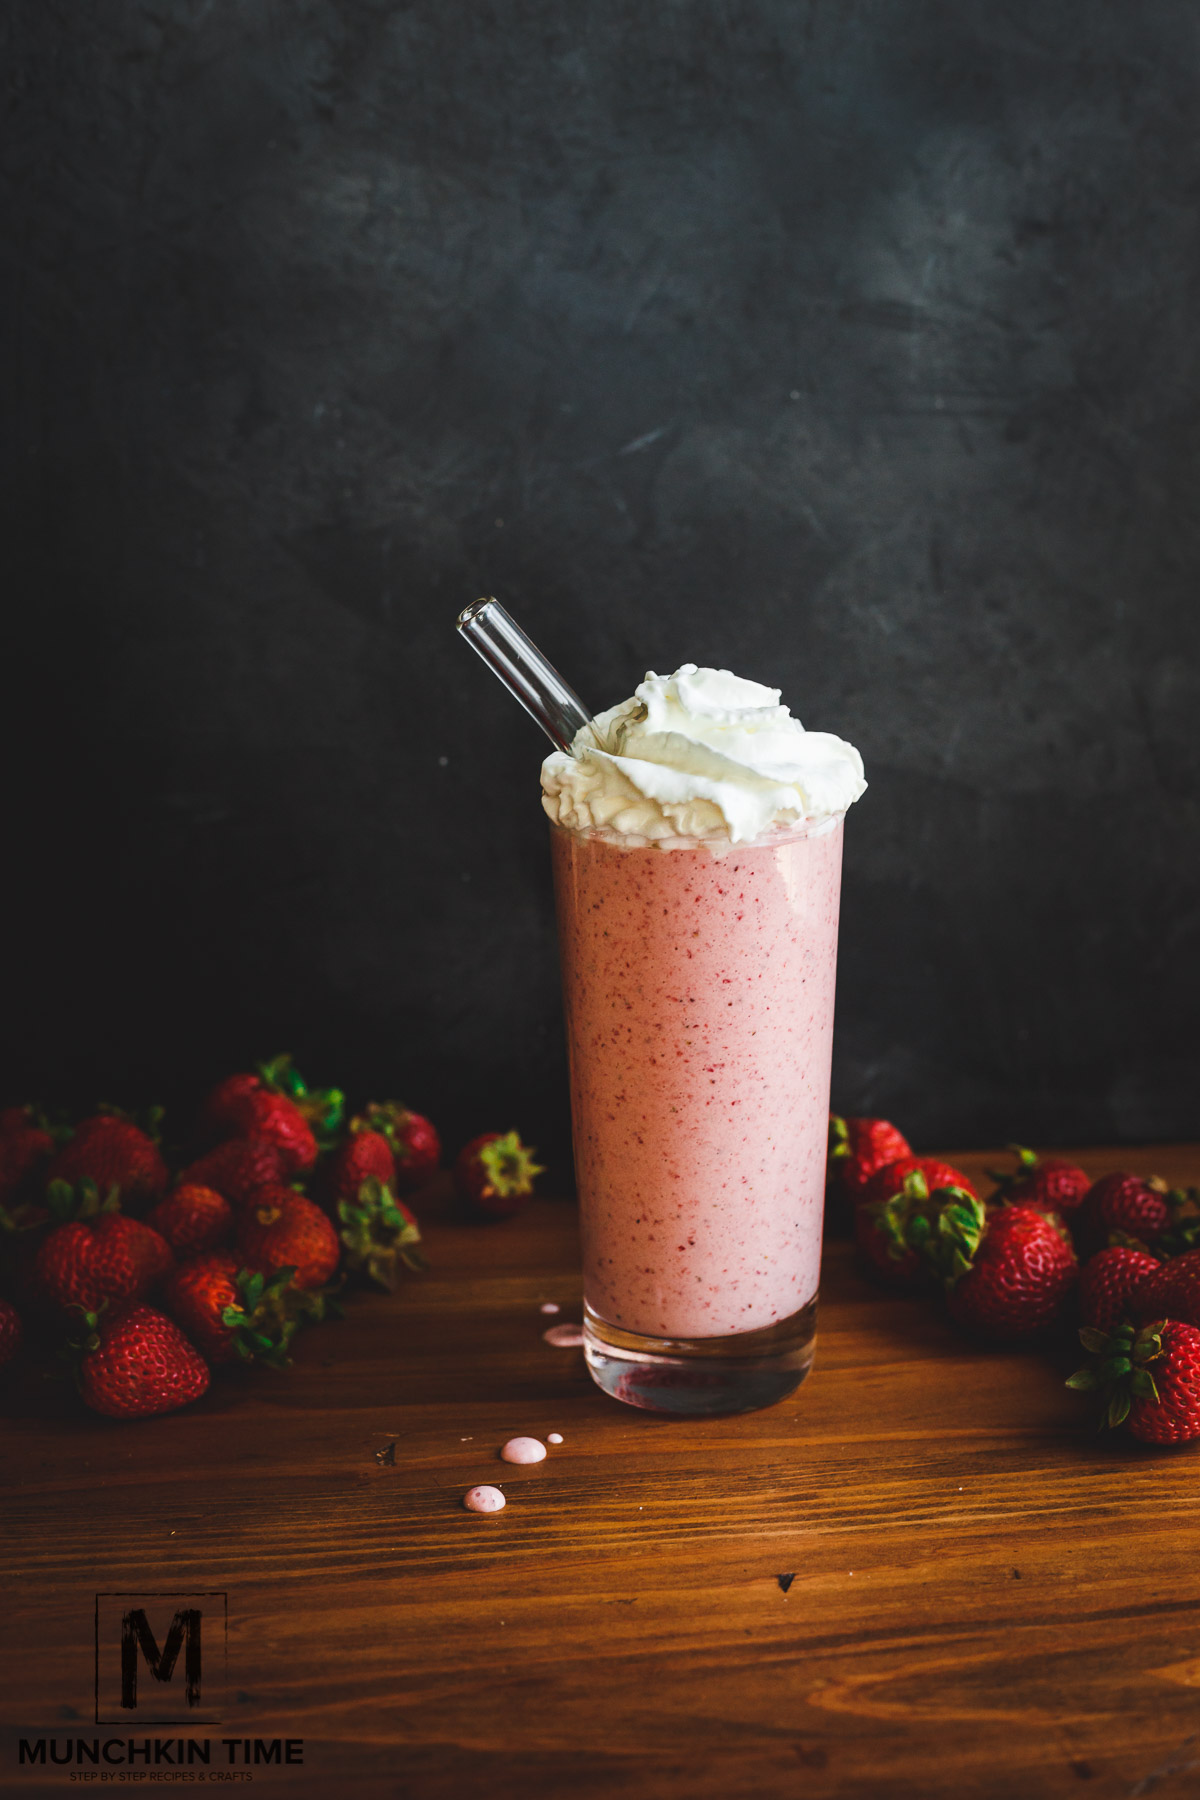 Super easy strawberry and cream frappuccino starbucks copycat recipe